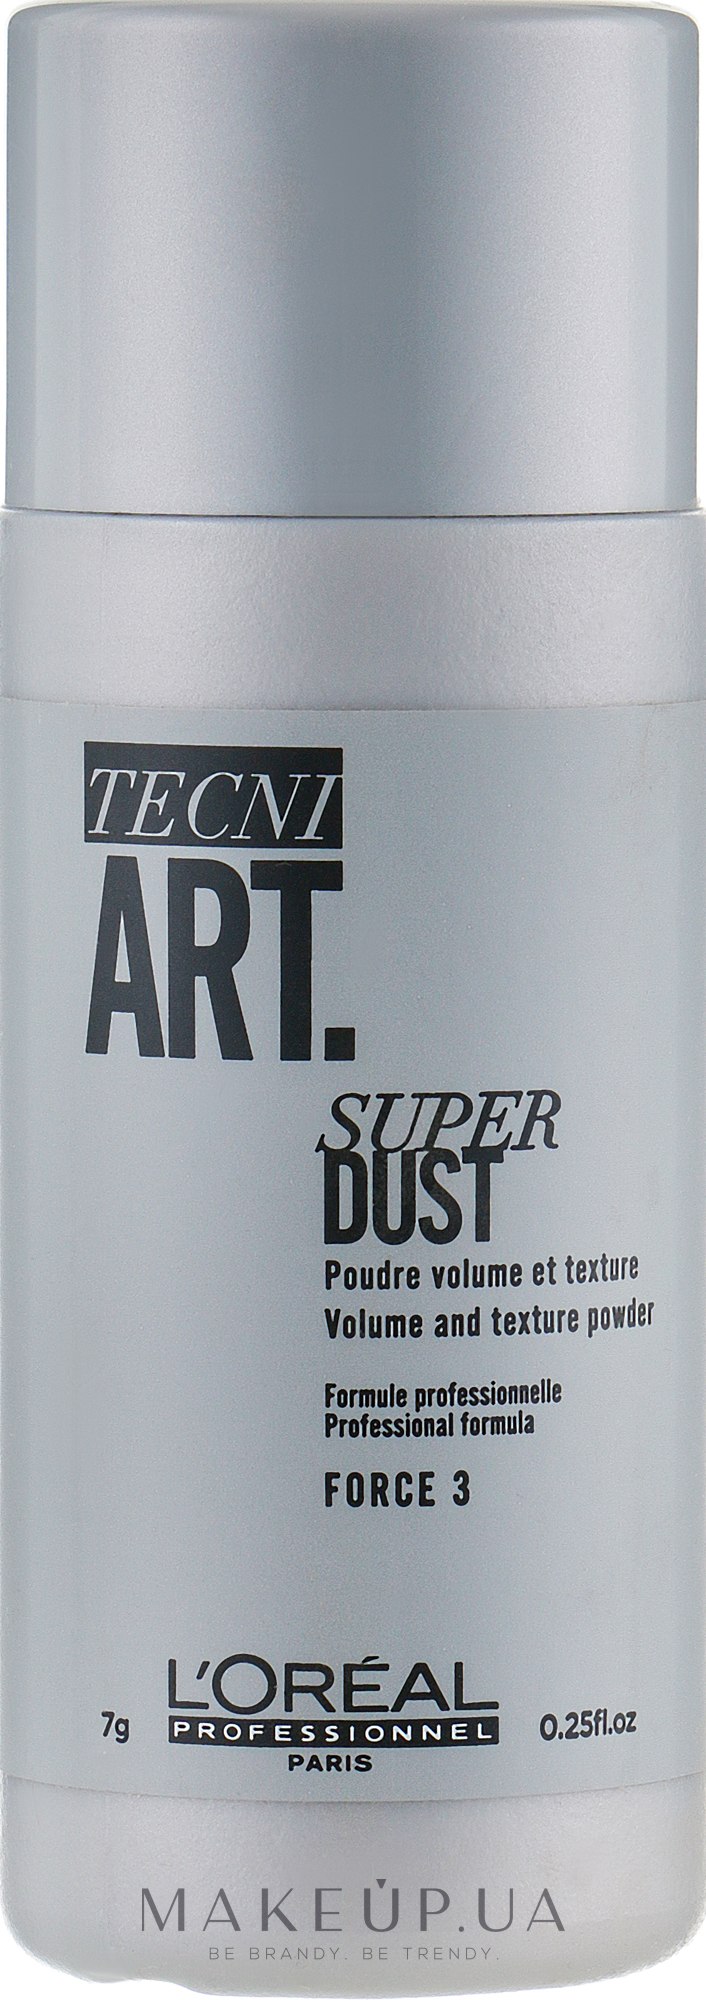 Пудра для додання об'єму волоссю - L'Oreal Professionnel Tecni.art Super Dust — фото 7g